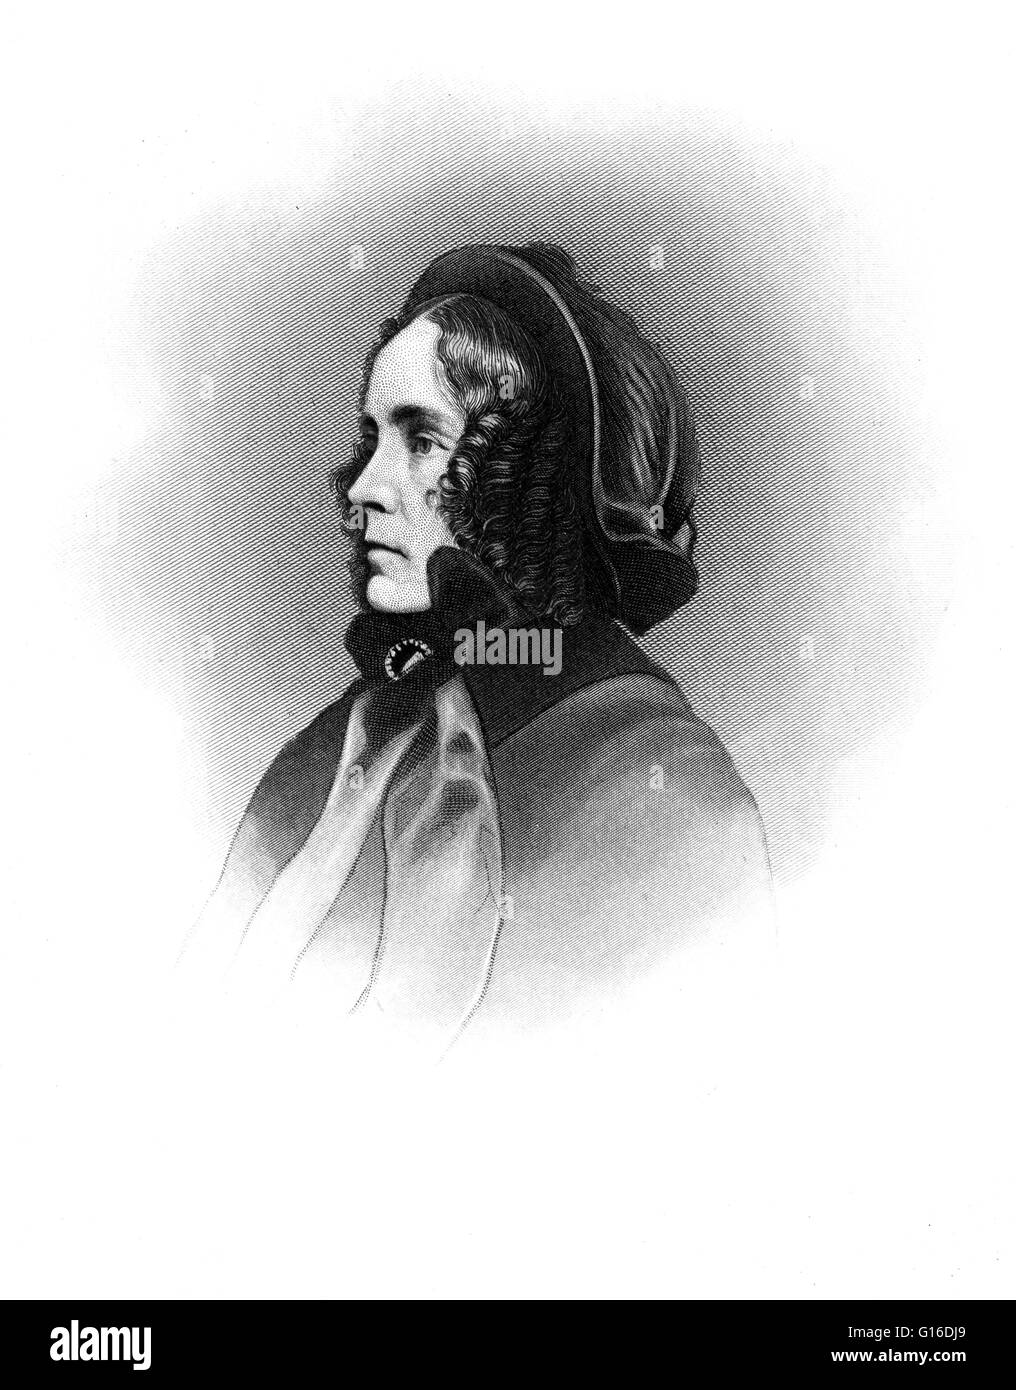 Jane Pierce avec son fils, Benjamin pris plusieurs années avant sa mort en 1953. Jane signifie Appleton Pierce (12 mars 1806 - 2 décembre 1863), épouse du Président des États-Unis Franklin Pierce, a été la première dame des États-Unis de 1853 à 1857. Franklin, 30, mar Banque D'Images